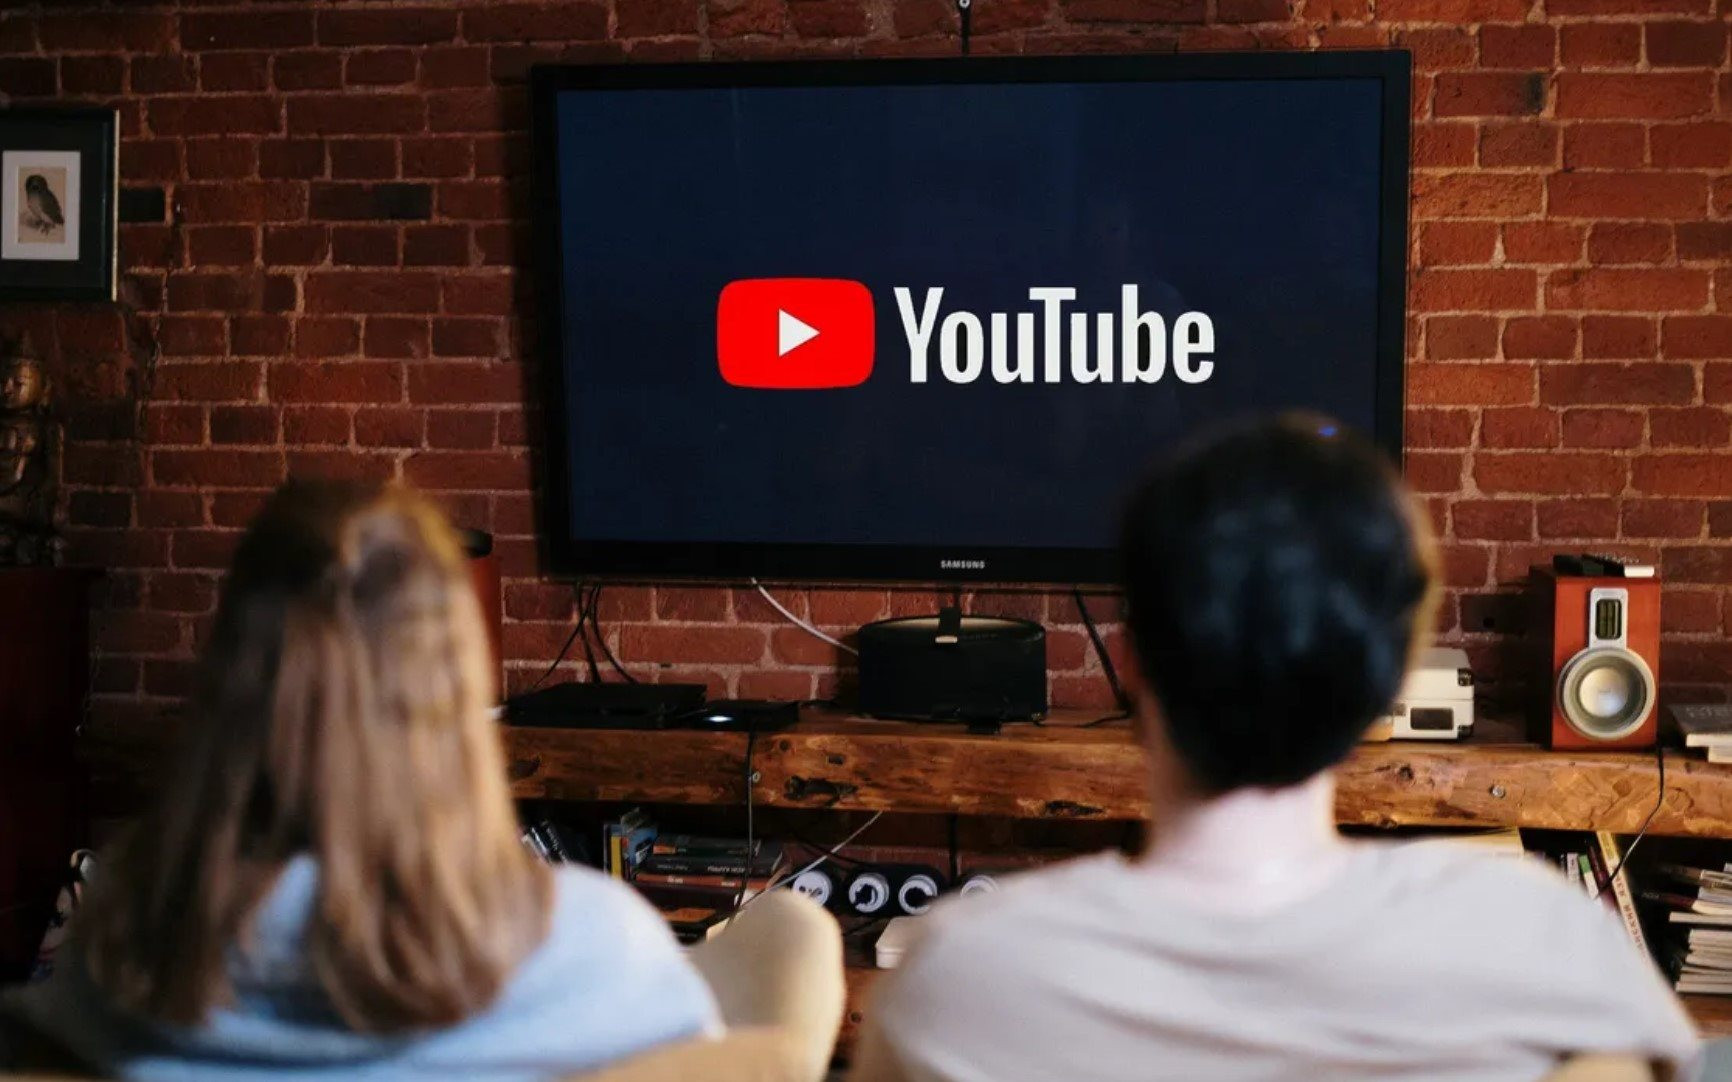 YouTube mang đến cho người xem TV 1 tin vui, kèm theo 2 tin buồn